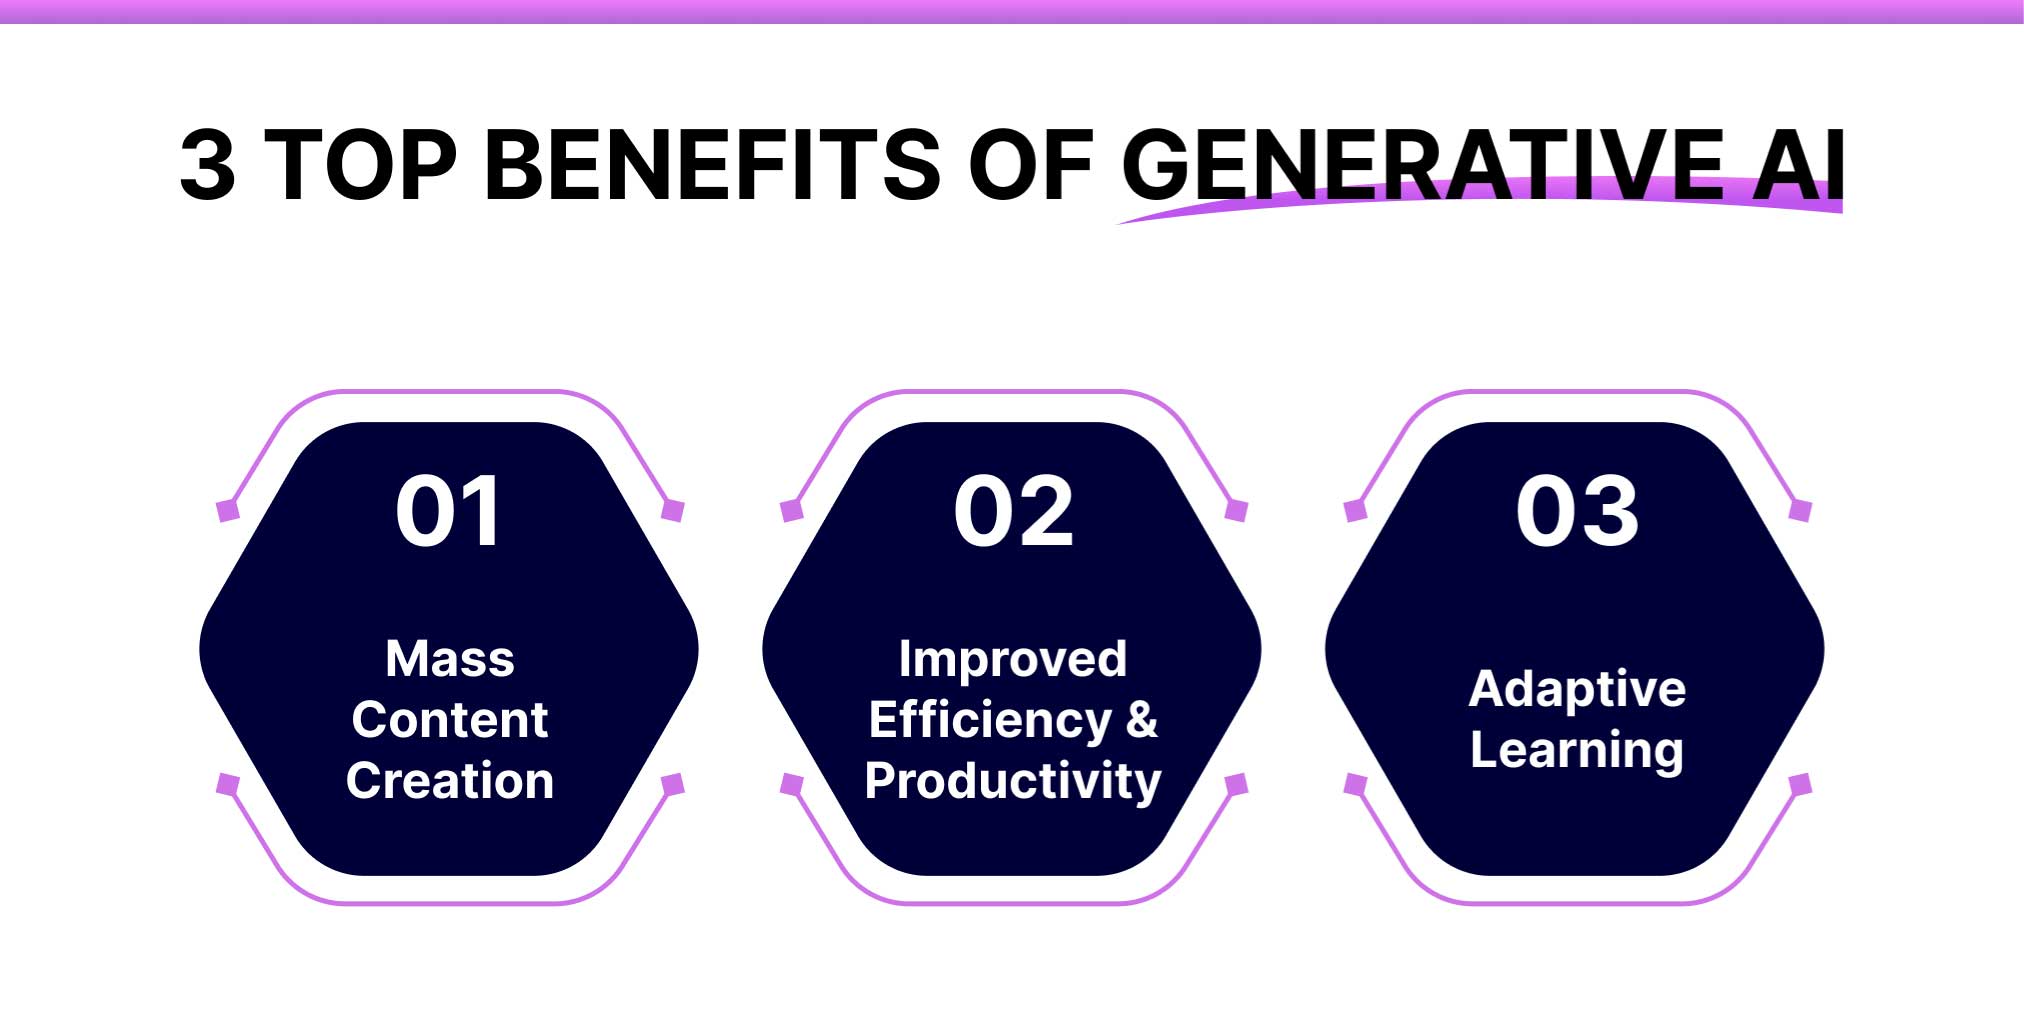 3 Top Benefits of Generative AI